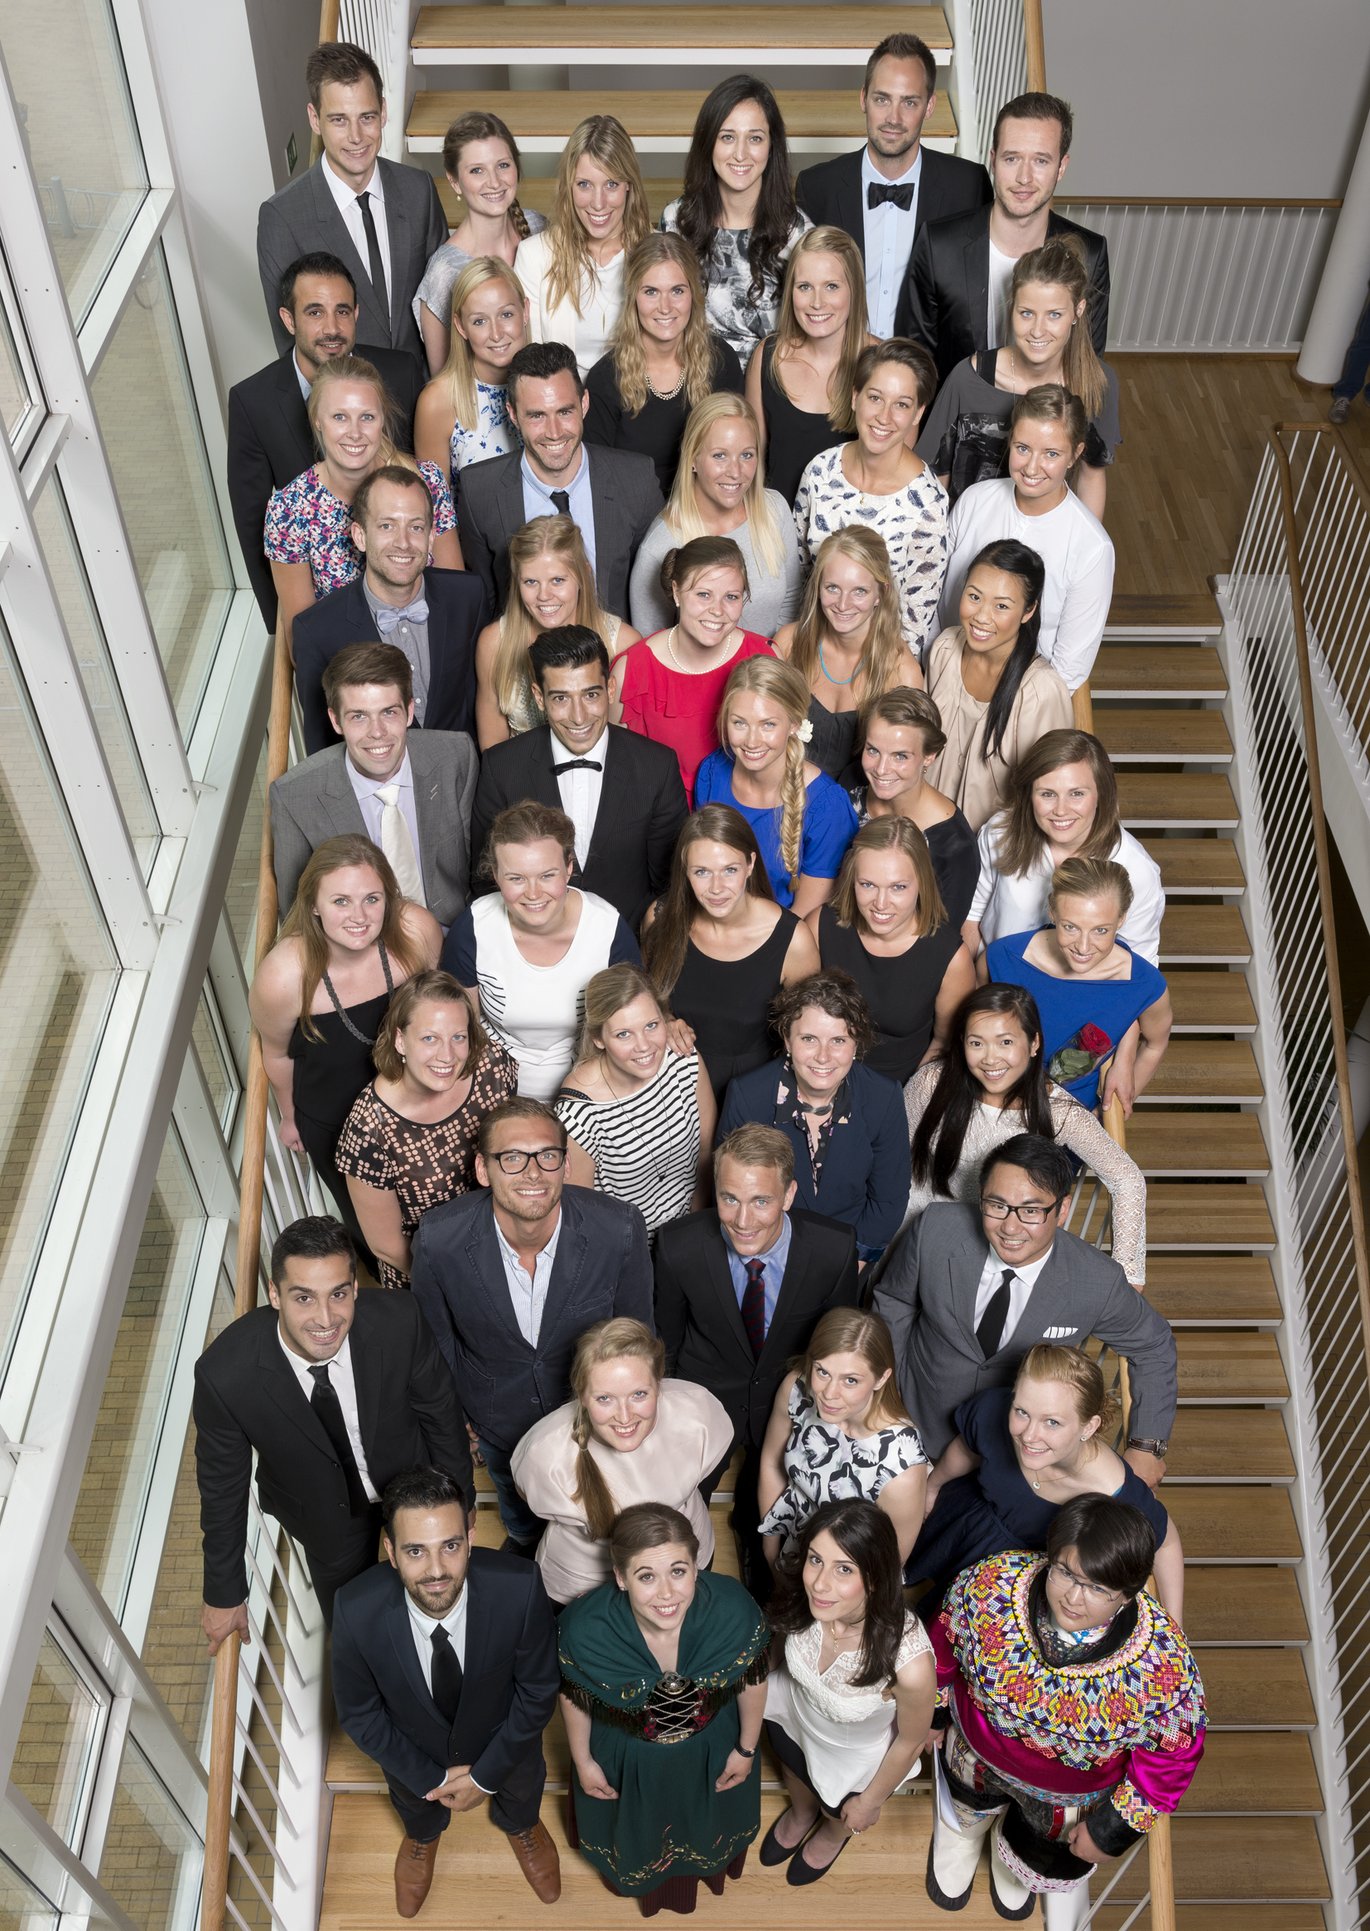 De nye tandlæger fra Aarhus Universitet. Foto: Martin Vestergaard.